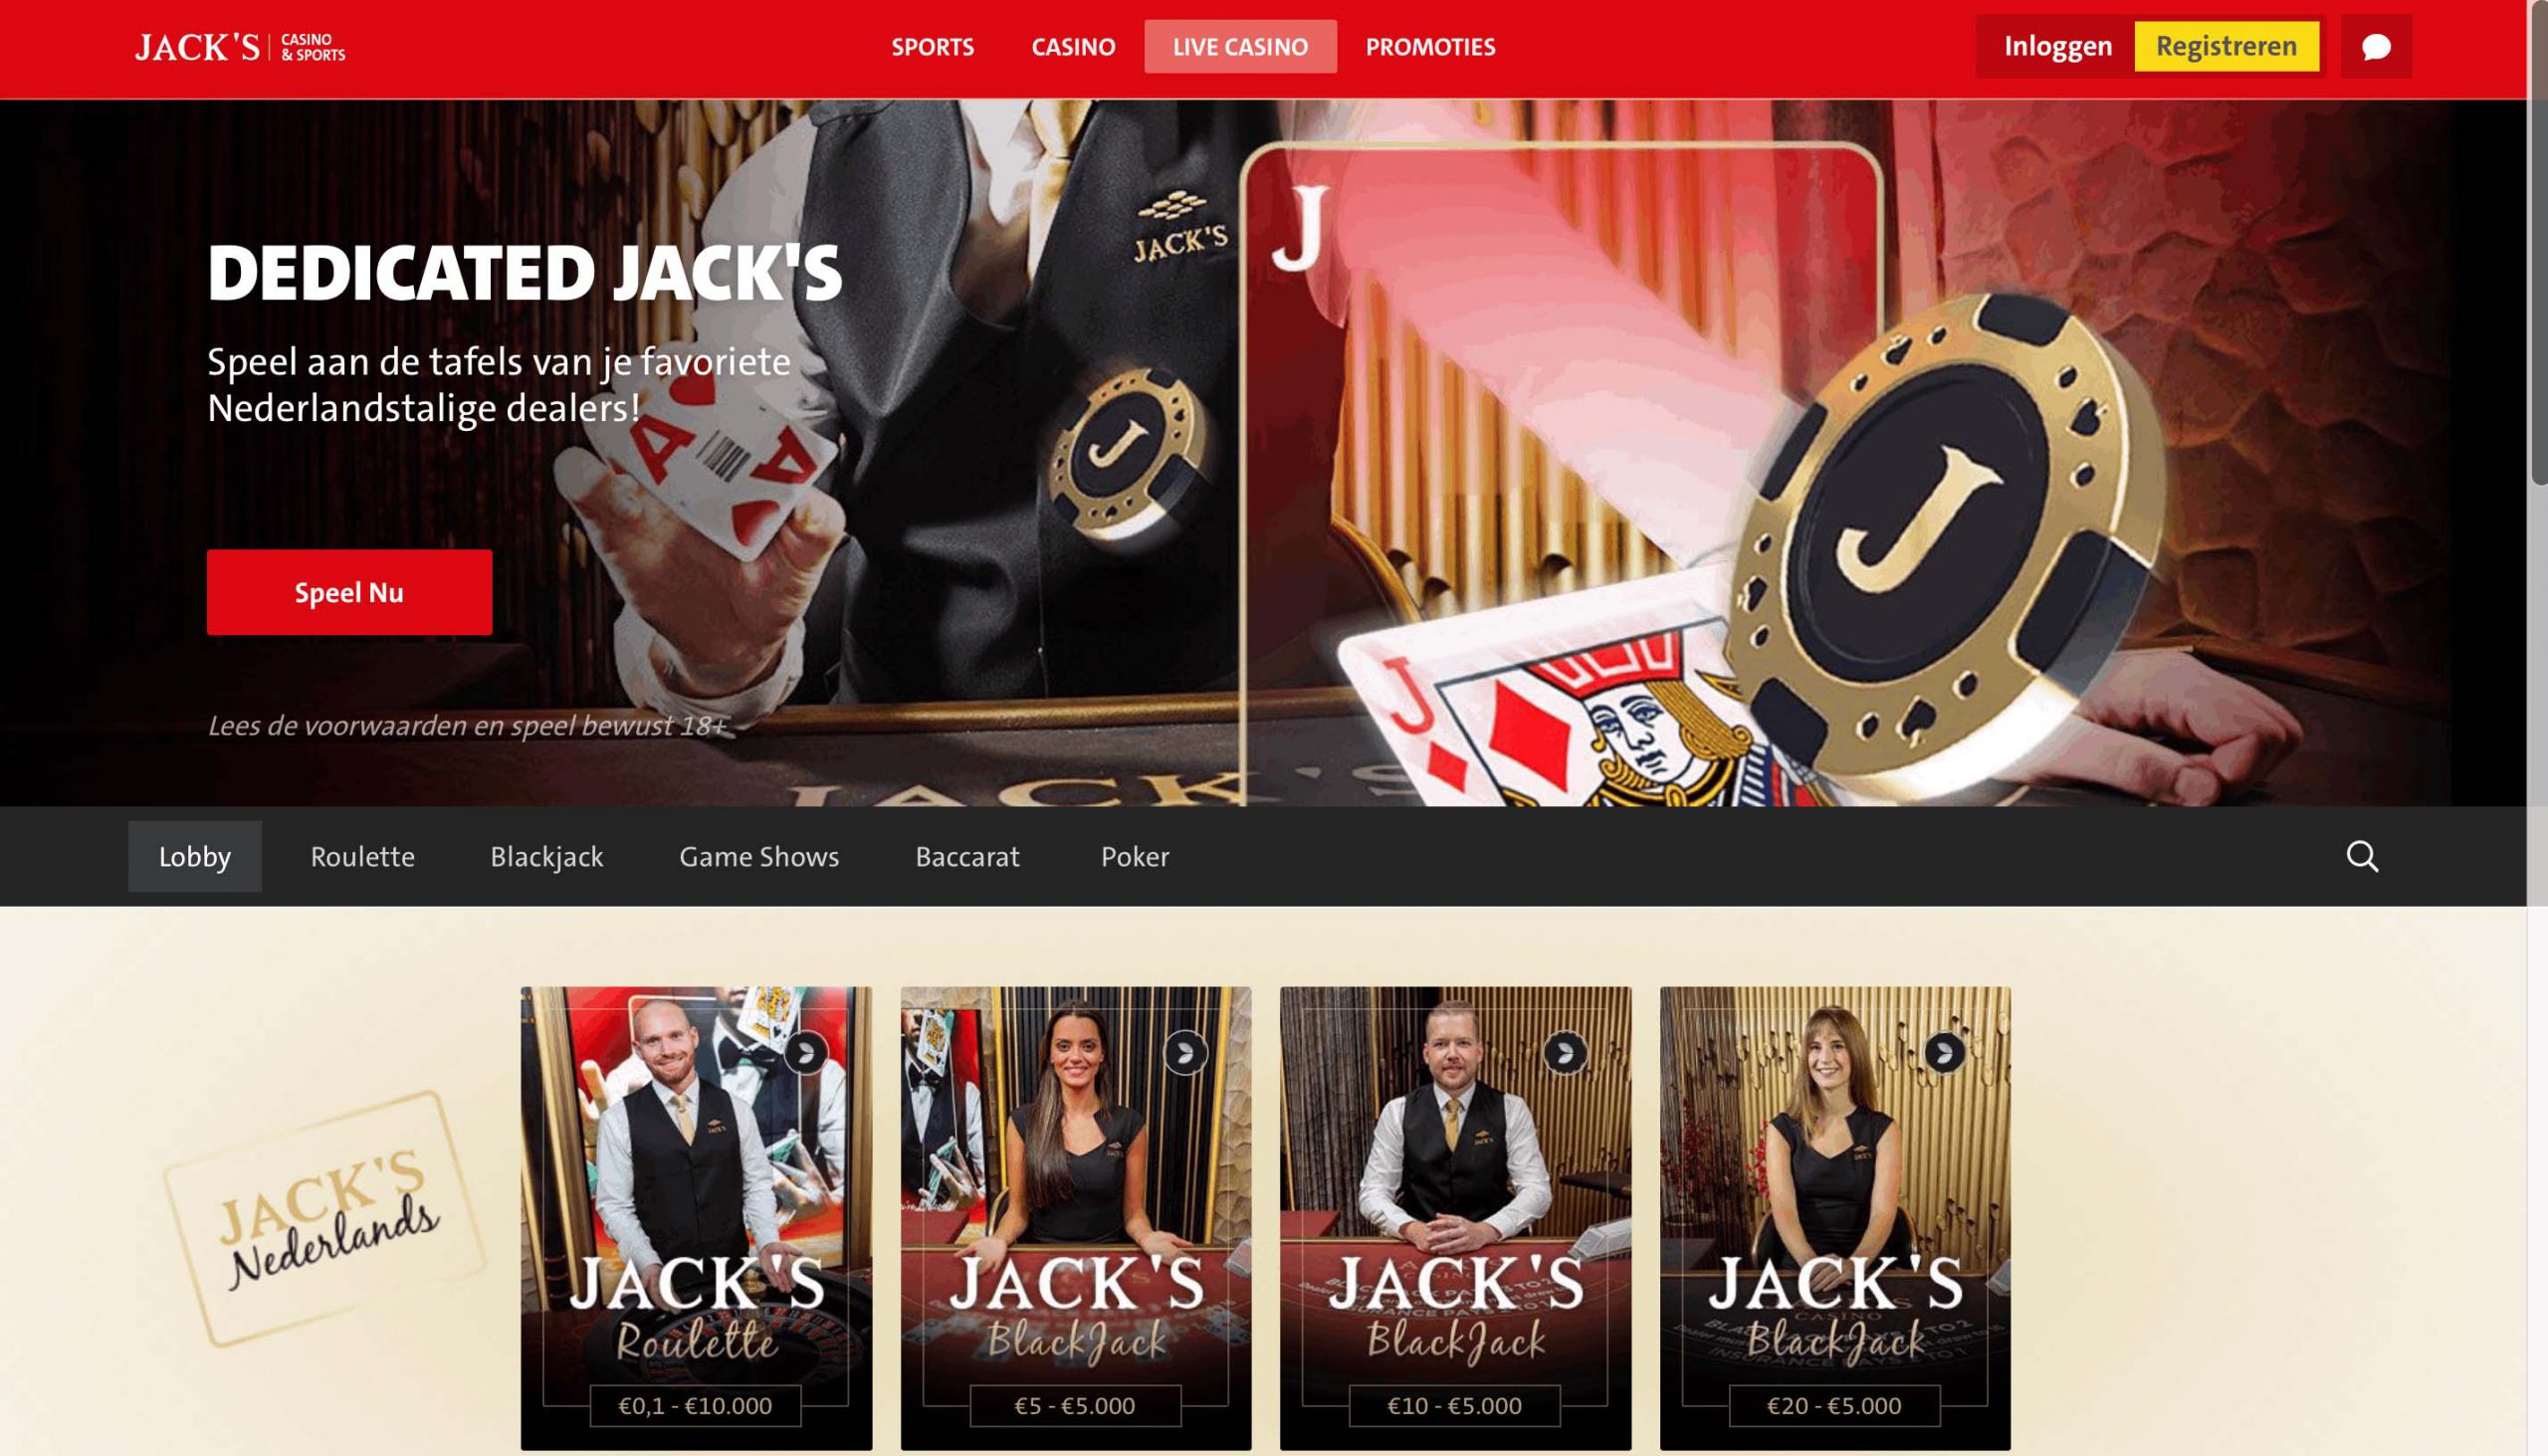 jacks casino review live casino